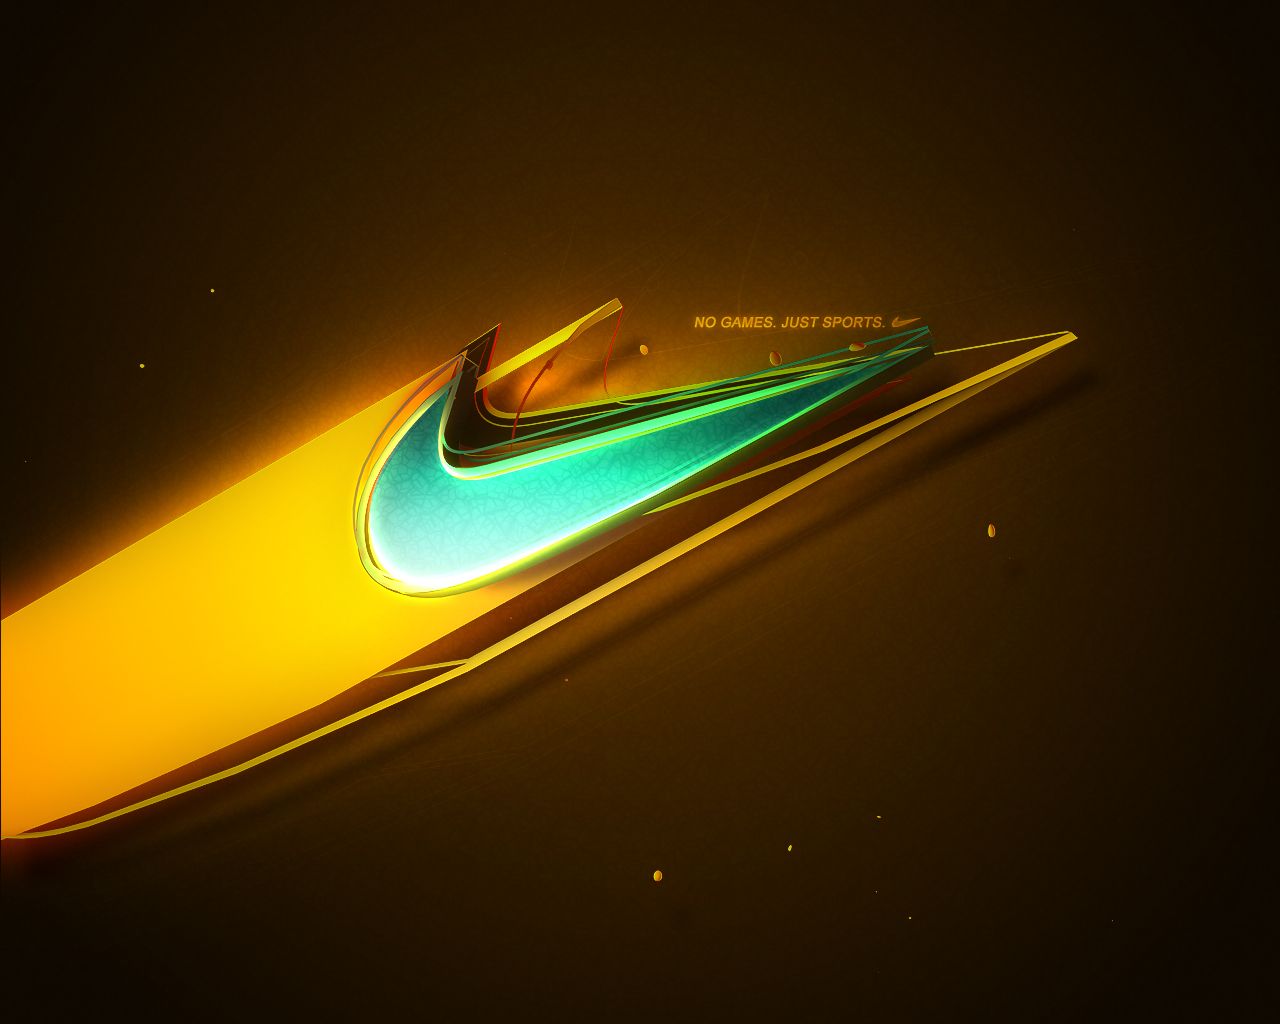 Nike Wallpaper For Desktop